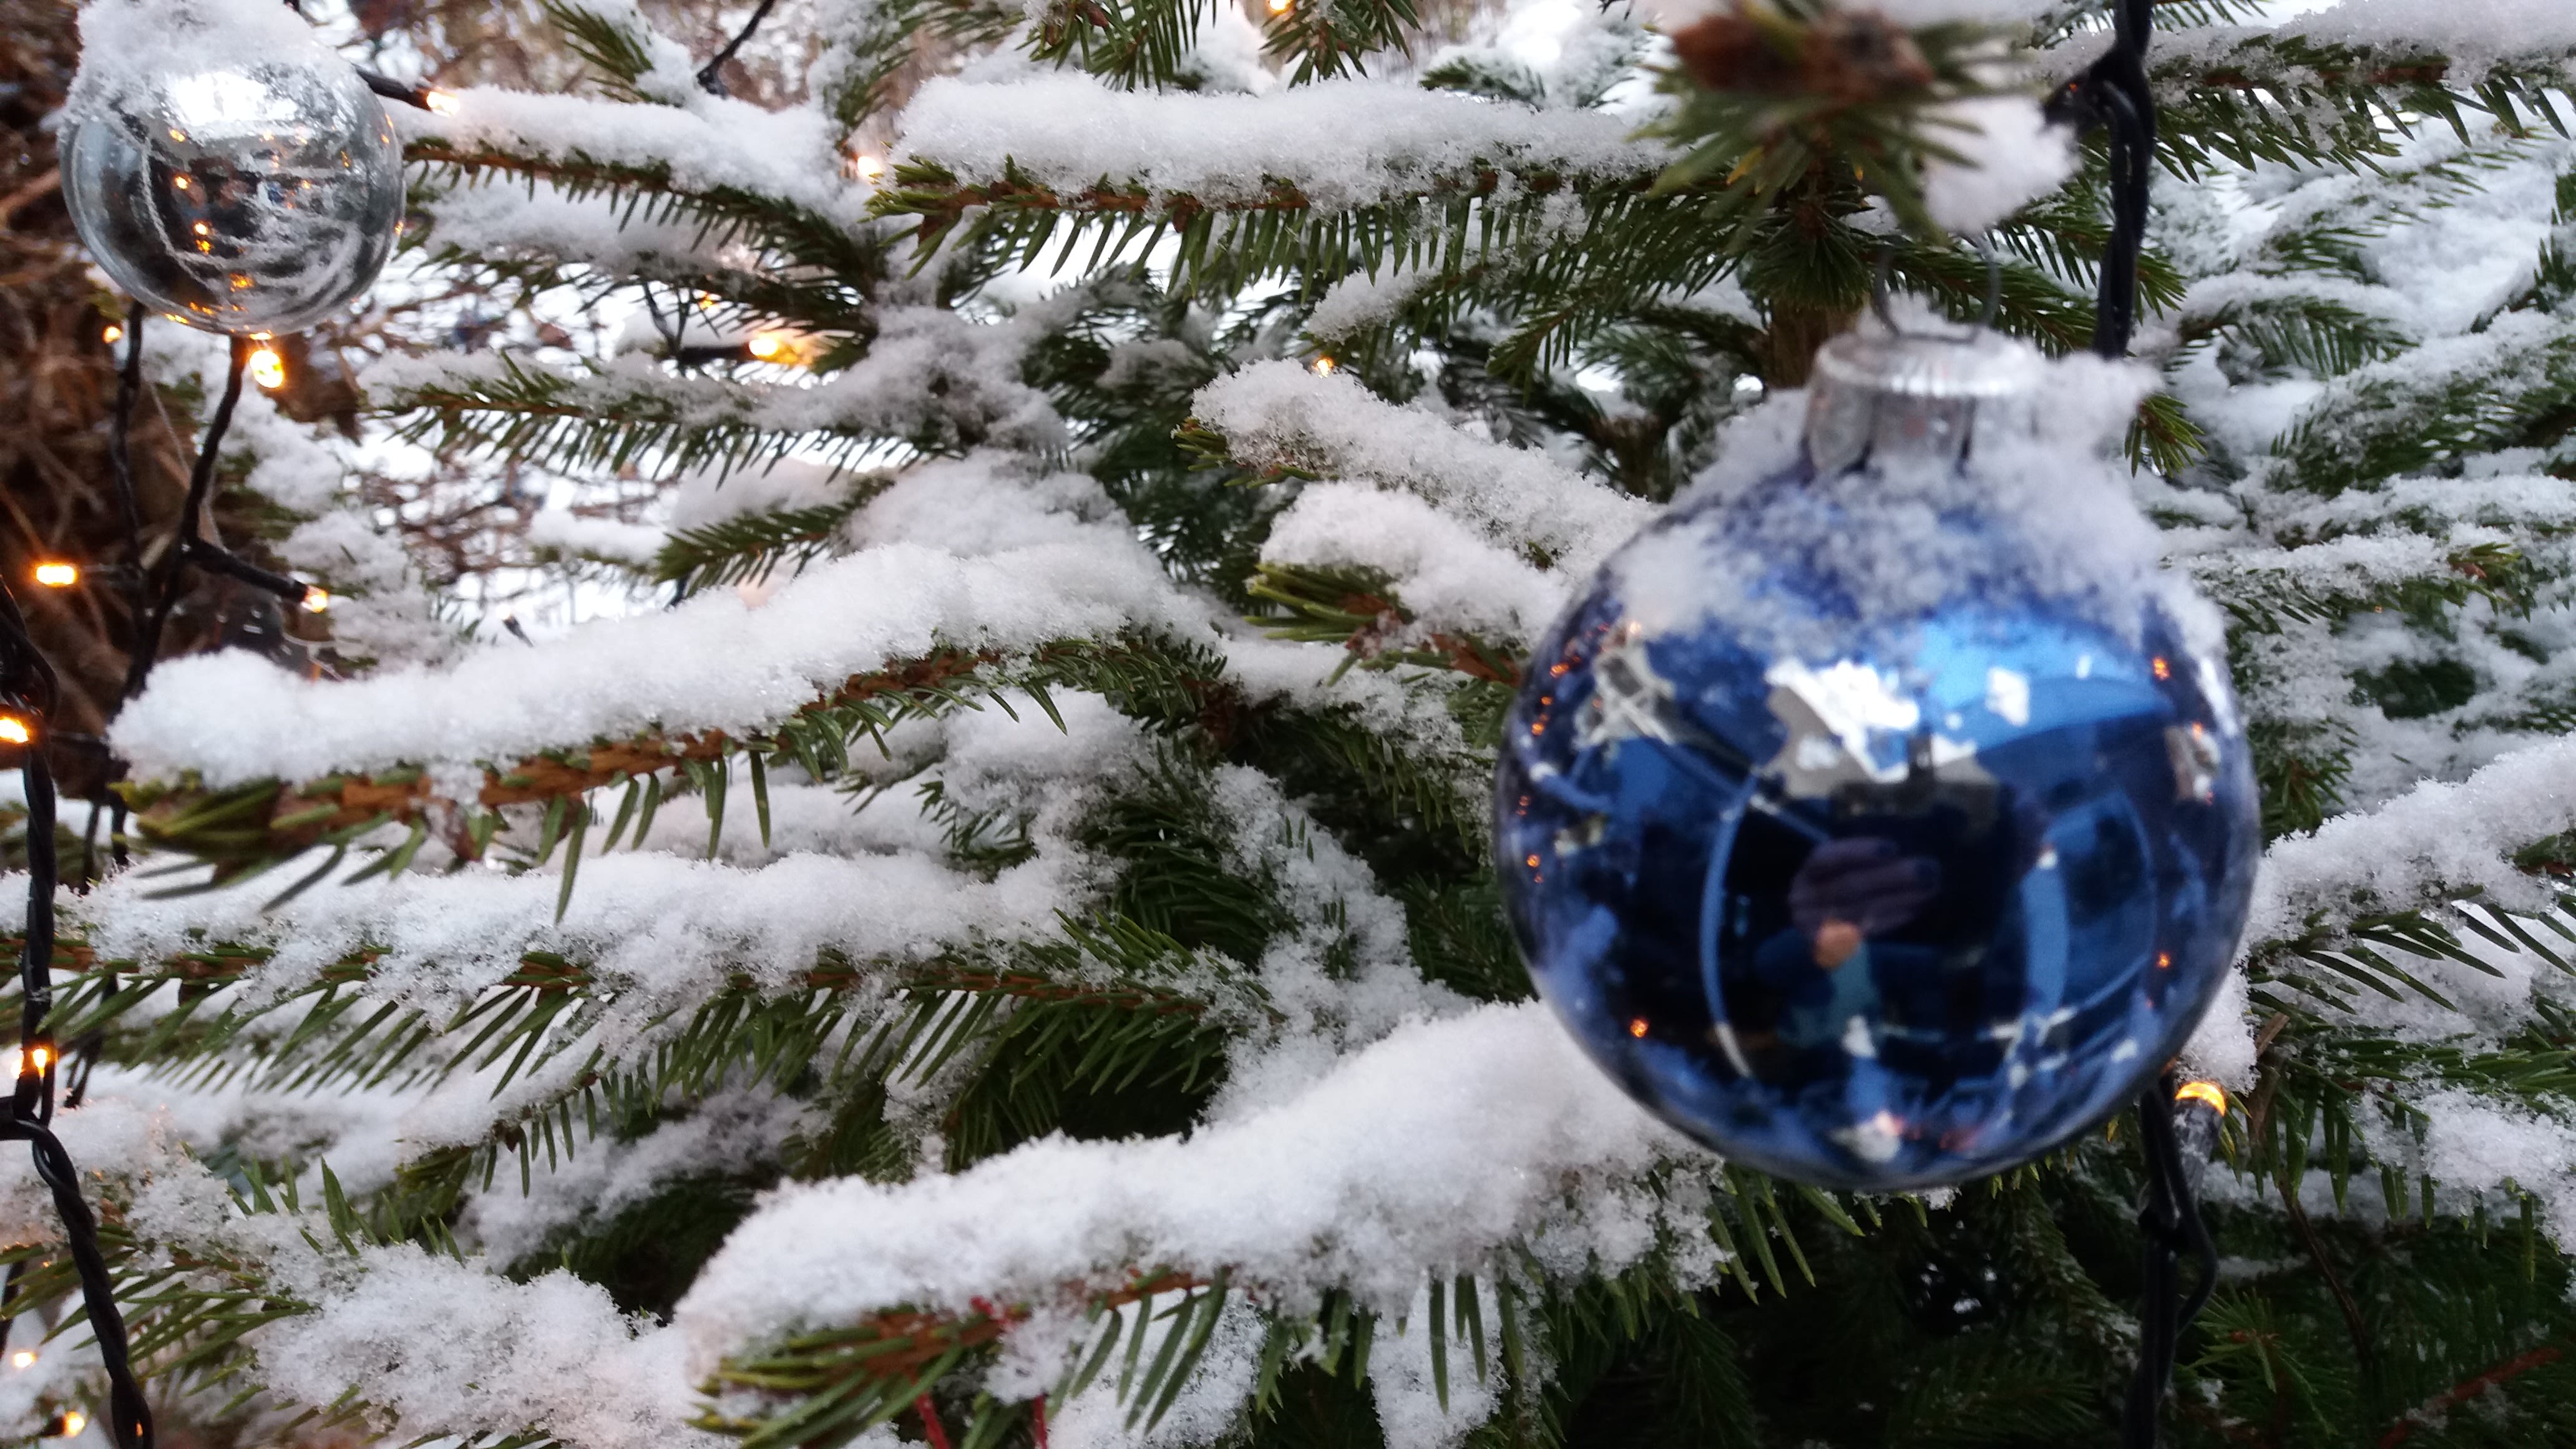 Kerstboom met sneeuw op takken en blauwe kerstbal